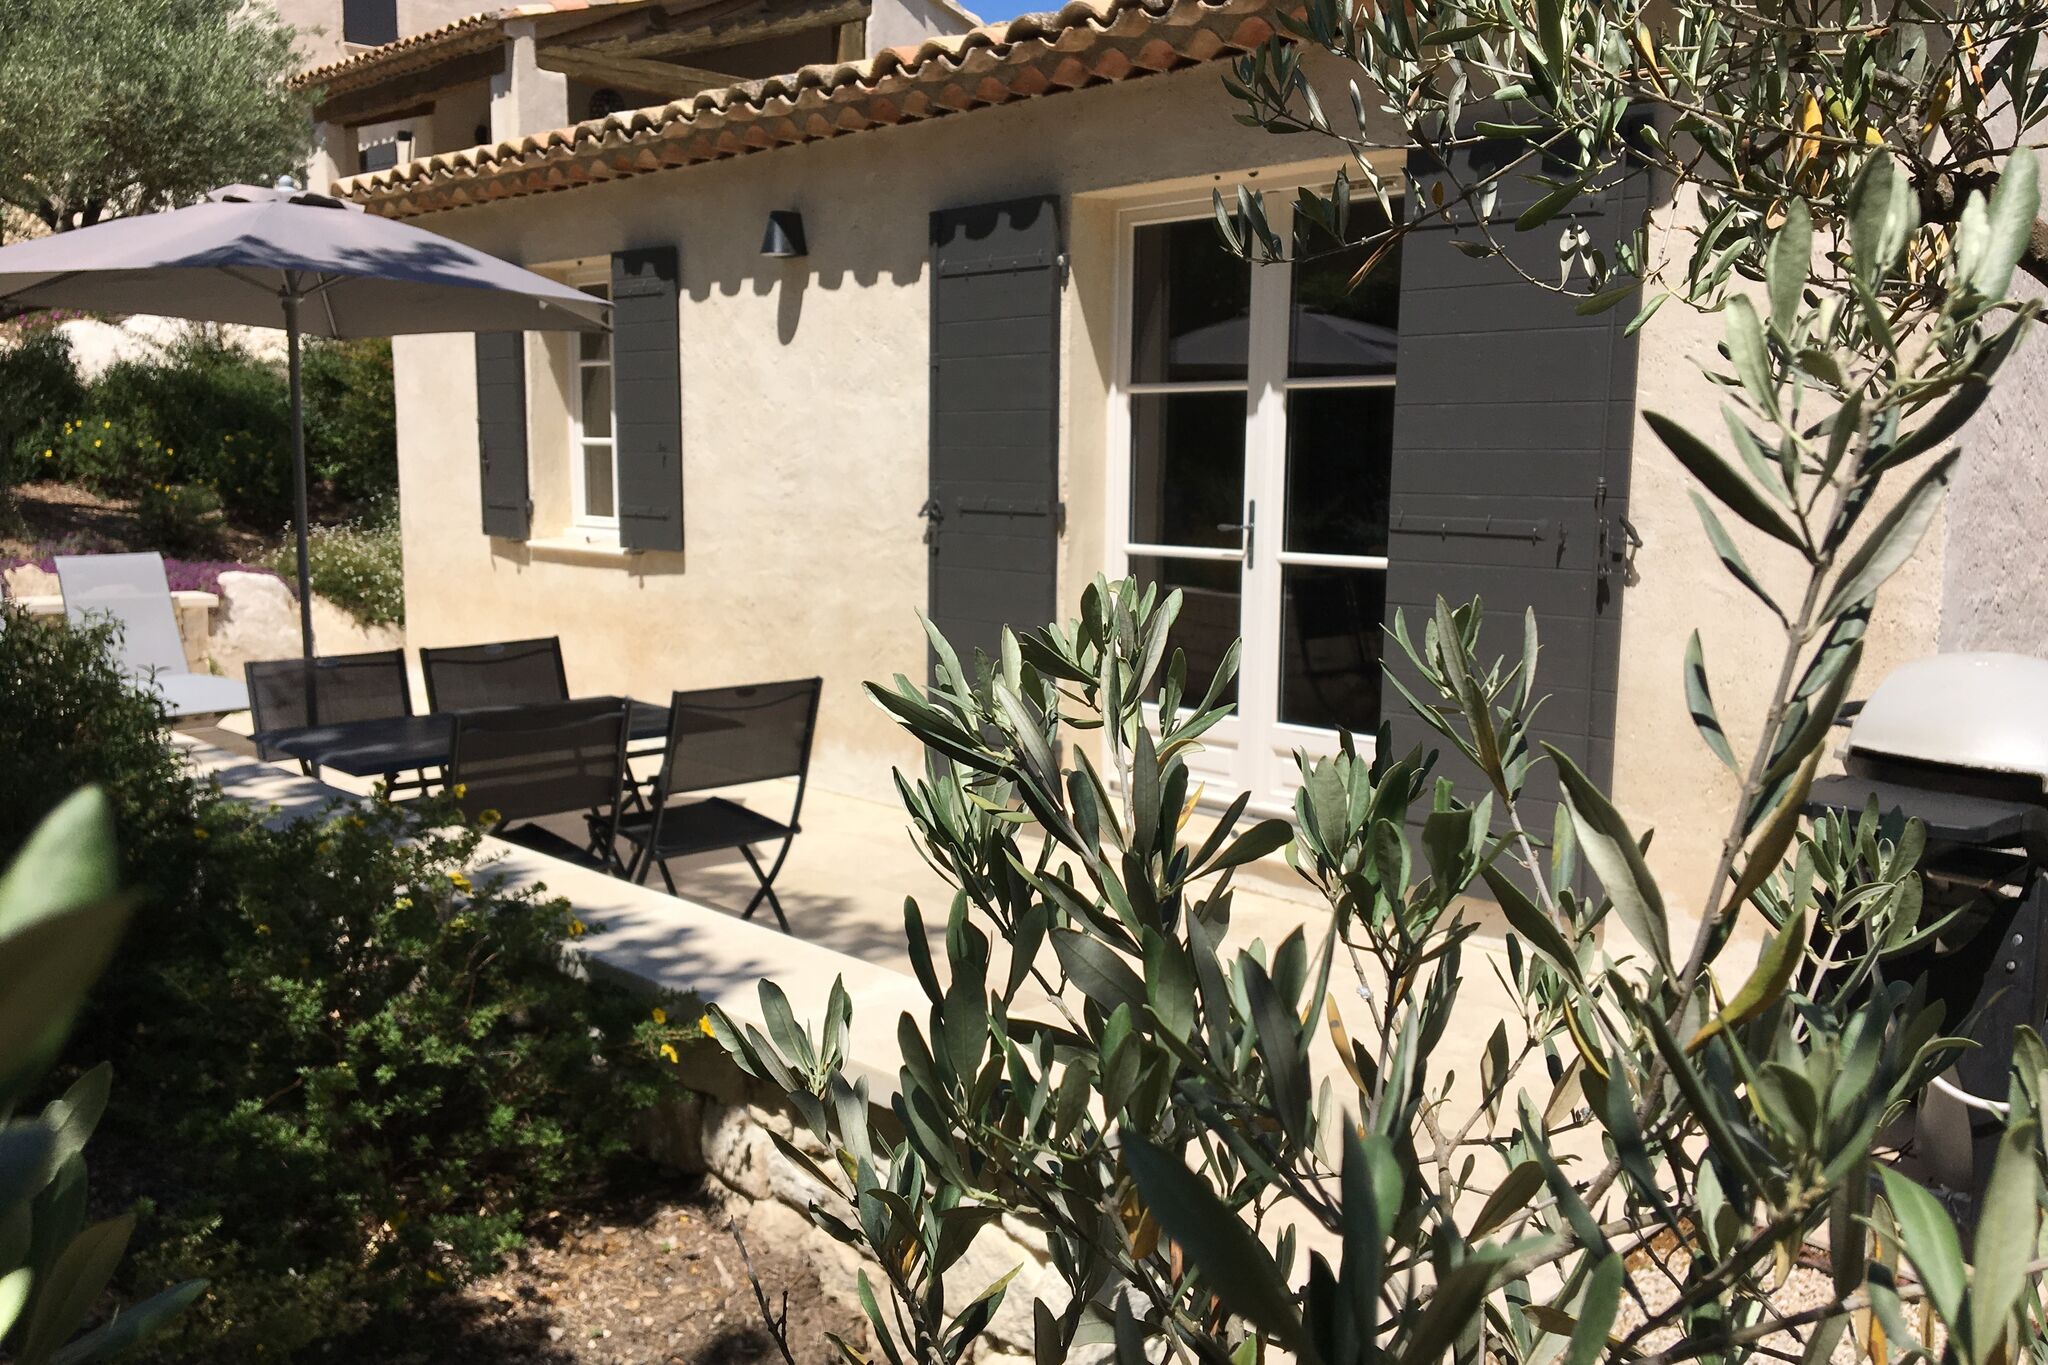 Onafhankelijk Provençaals huisje met zwembad en aangelegde tuin